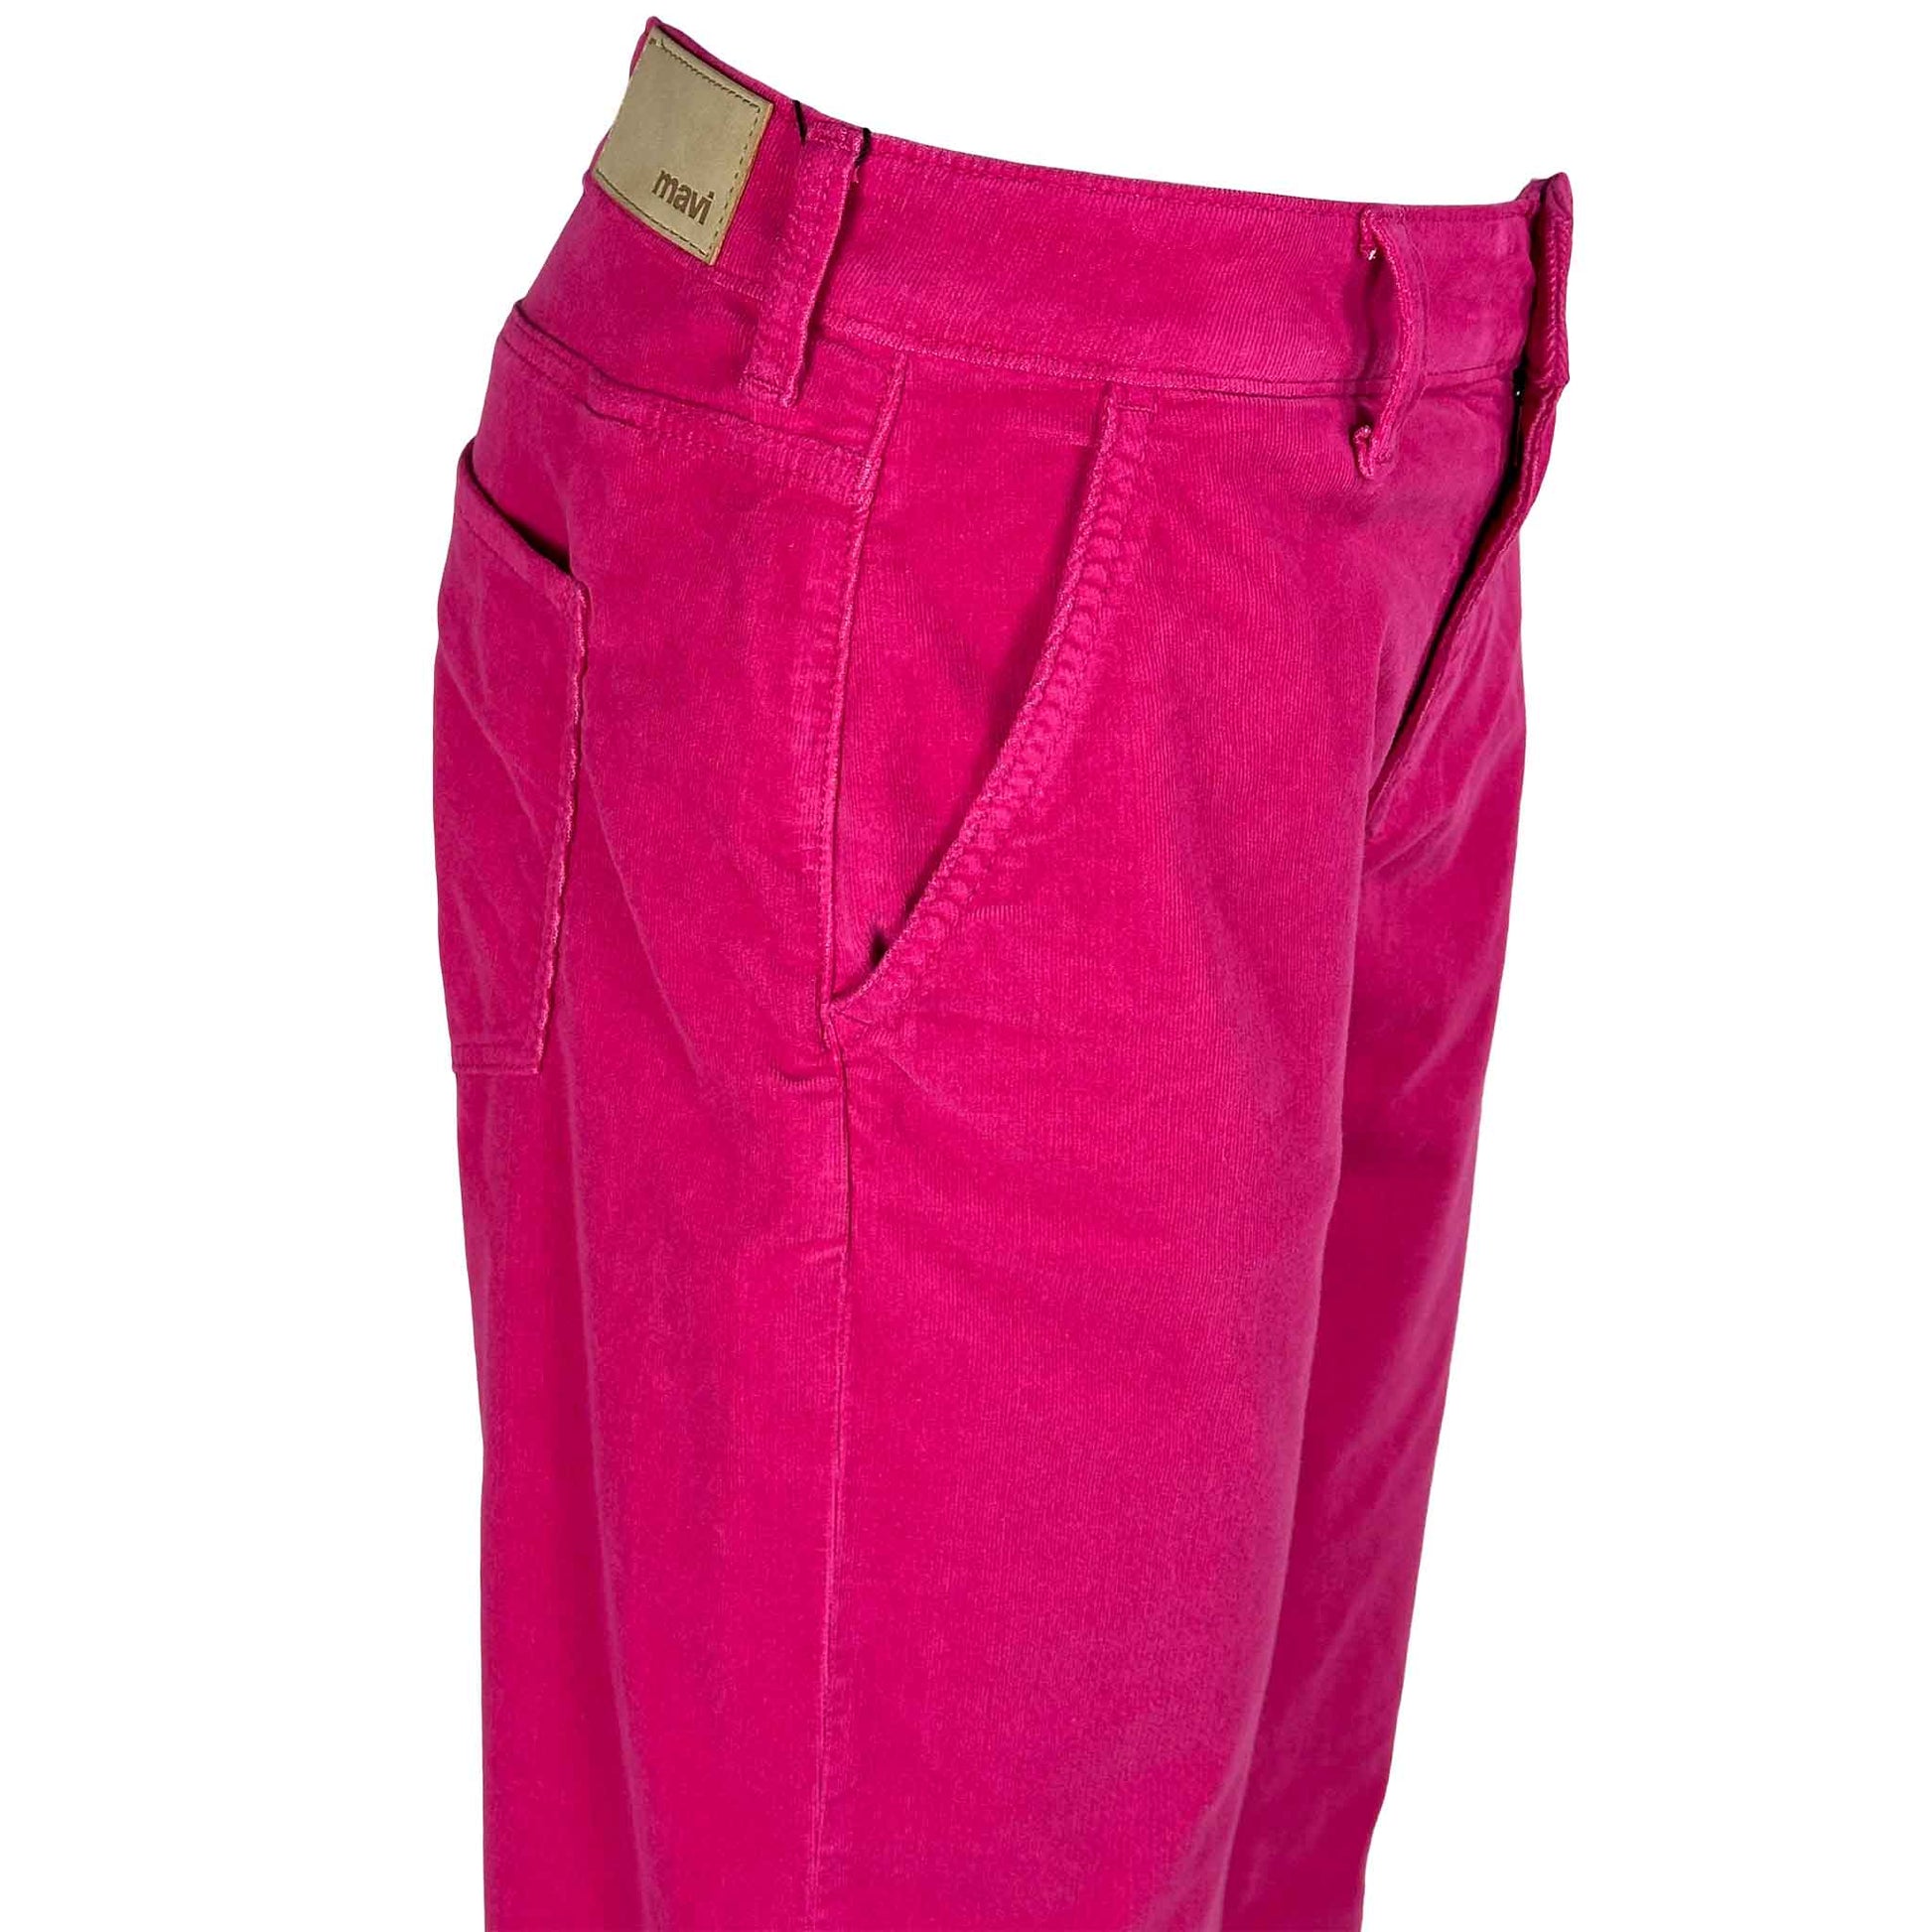 kleding lange vrouwen mavi jeans miracle shocking pink